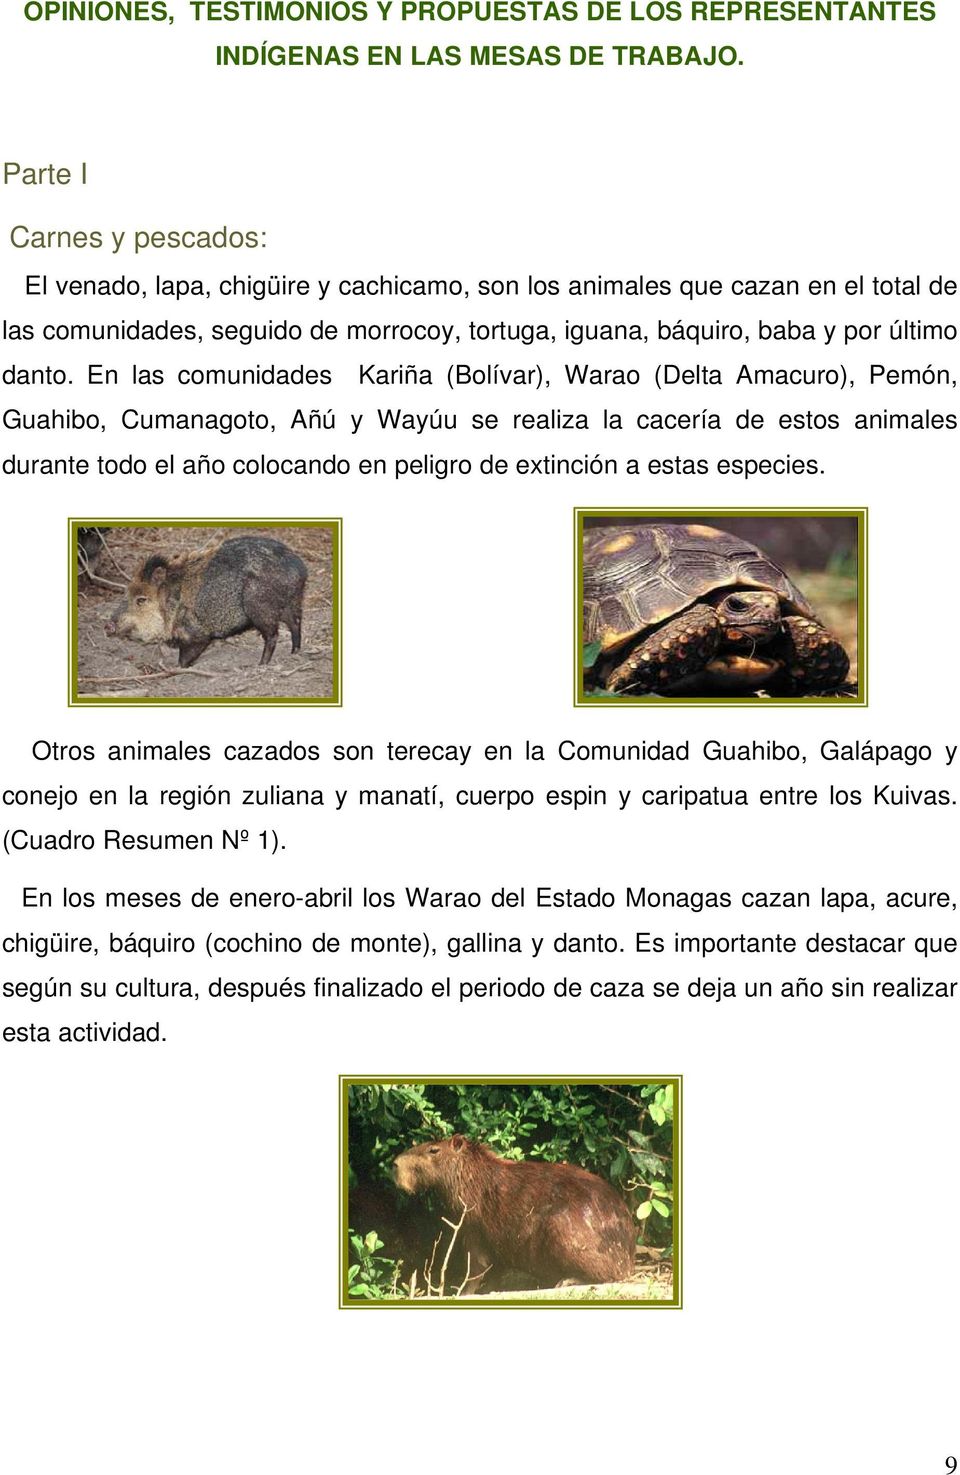 En las comunidades Kariña (Bolívar), Warao (Delta Amacuro), Pemón, Guahibo, Cumanagoto, Añú y Wayúu se realiza la cacería de estos animales durante todo el año colocando en peligro de extinción a